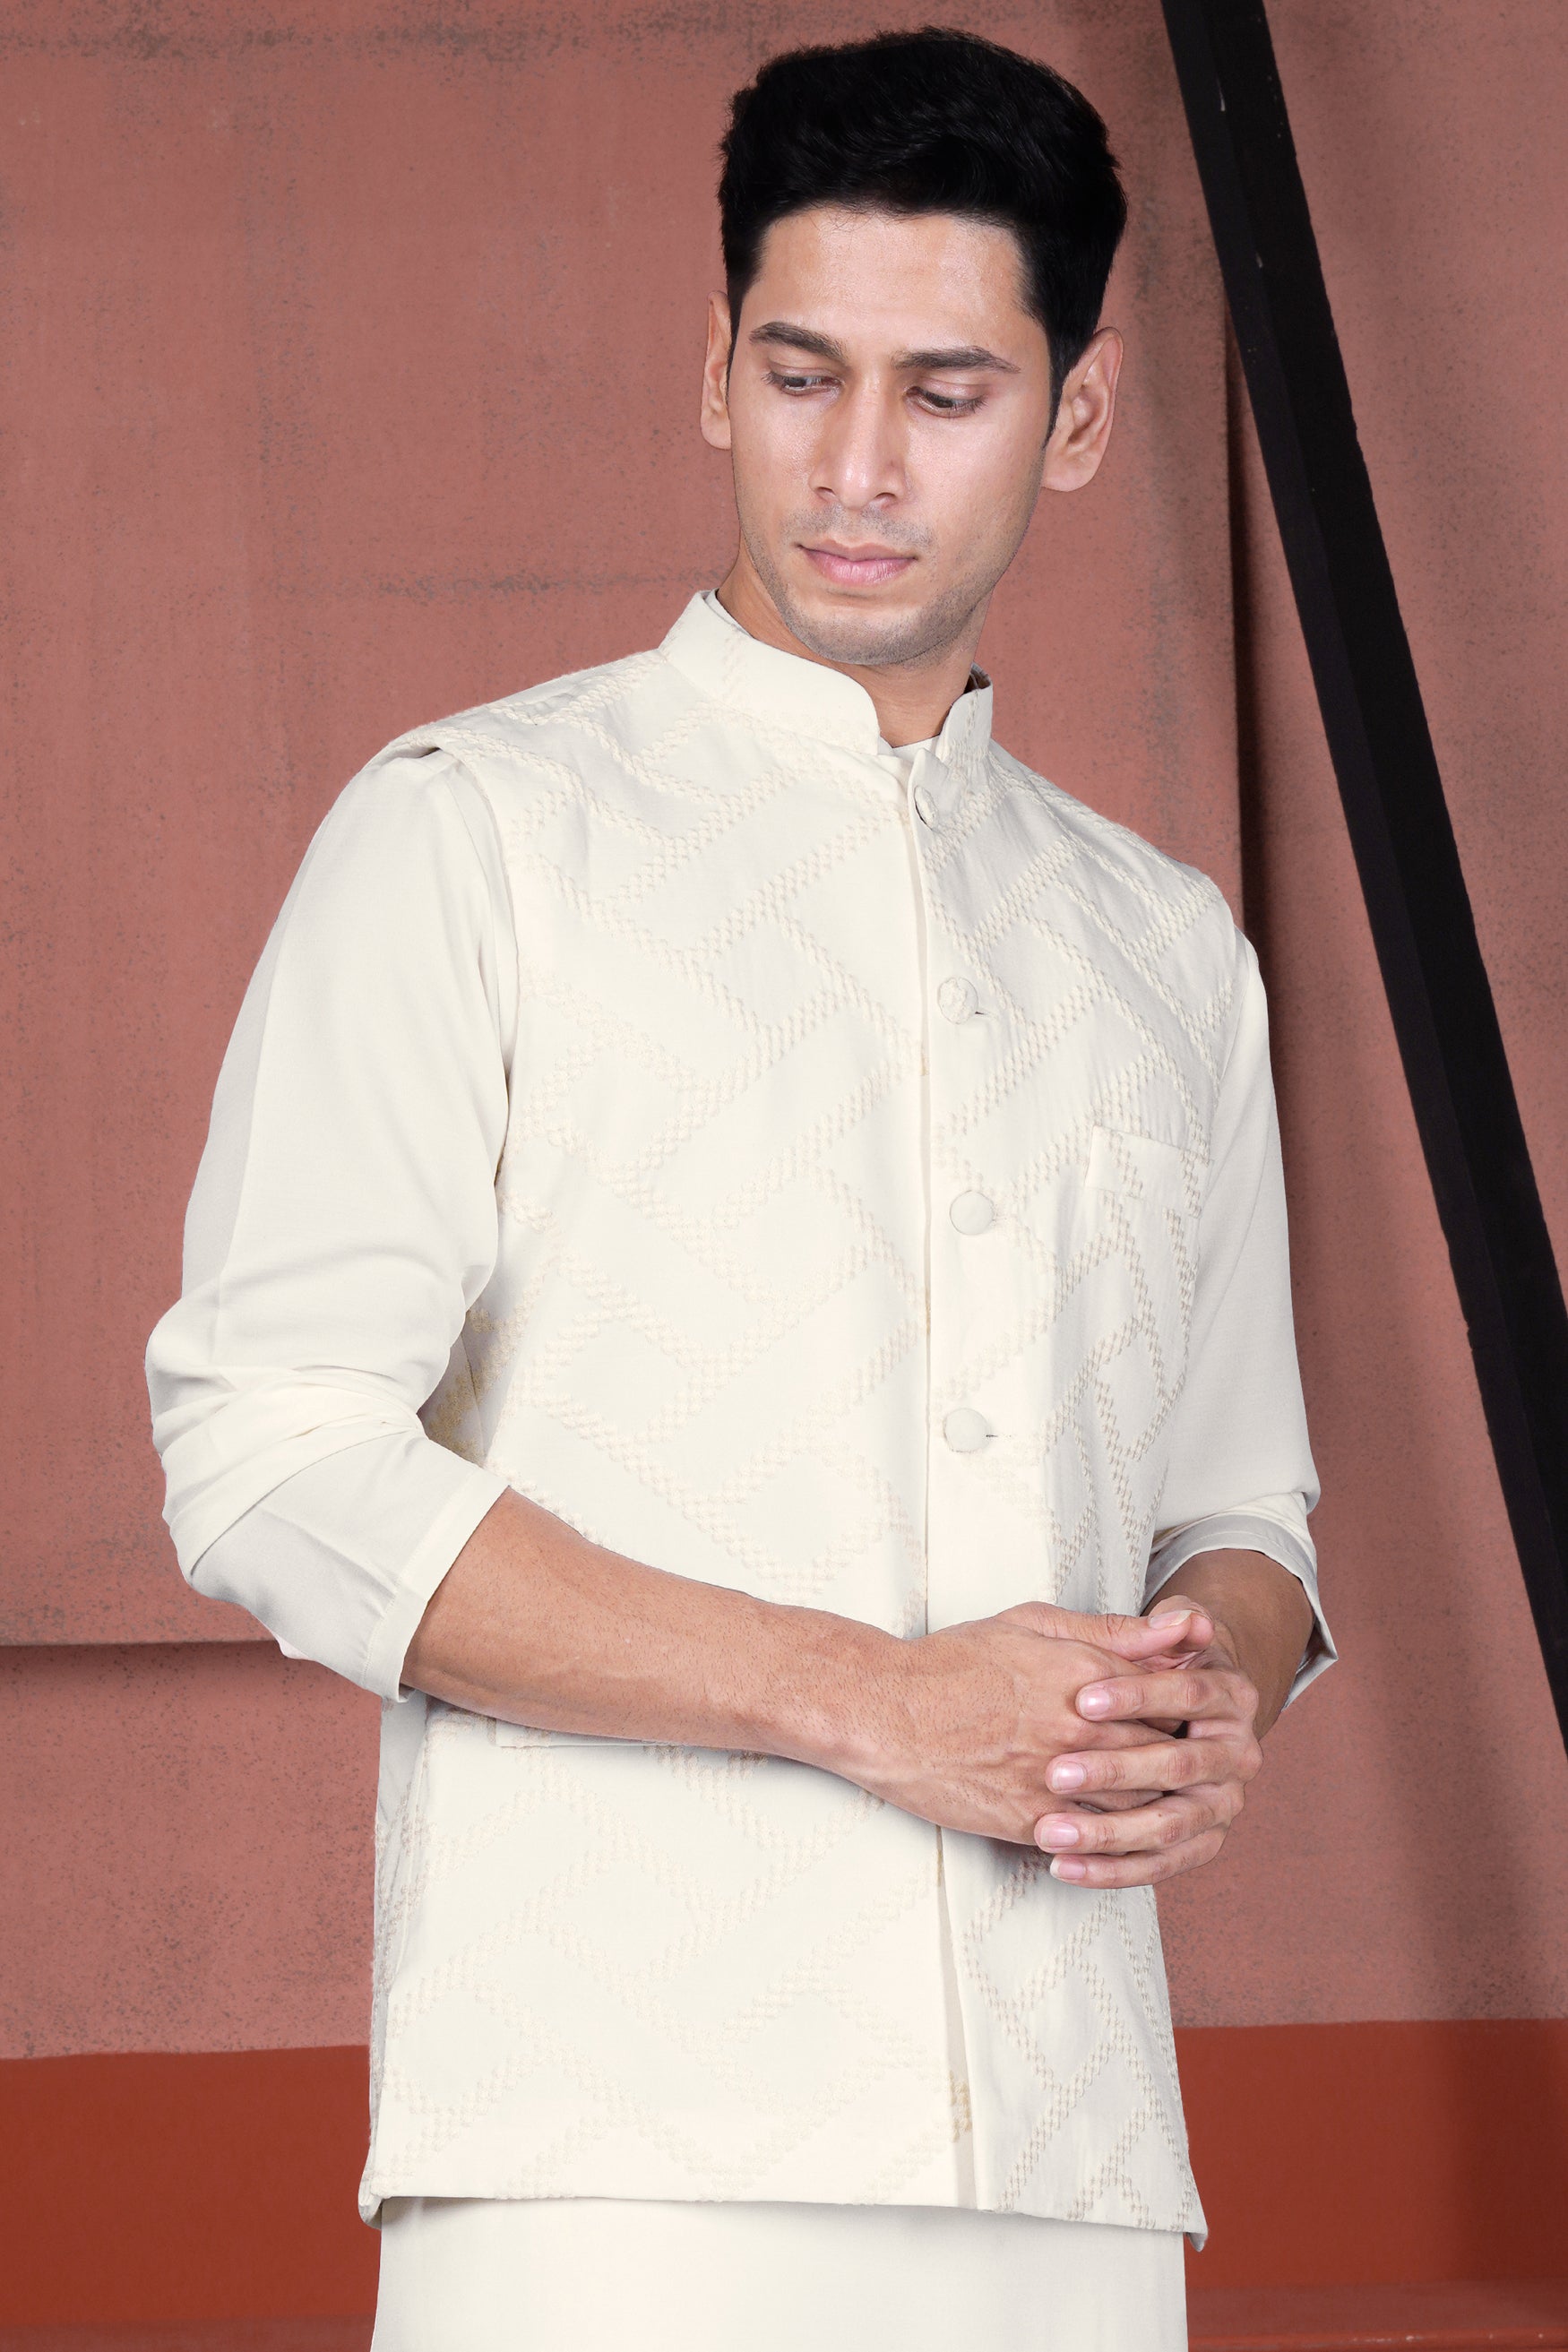 Albescent Cream Viscose Embroidered Designer Nehru Jacket